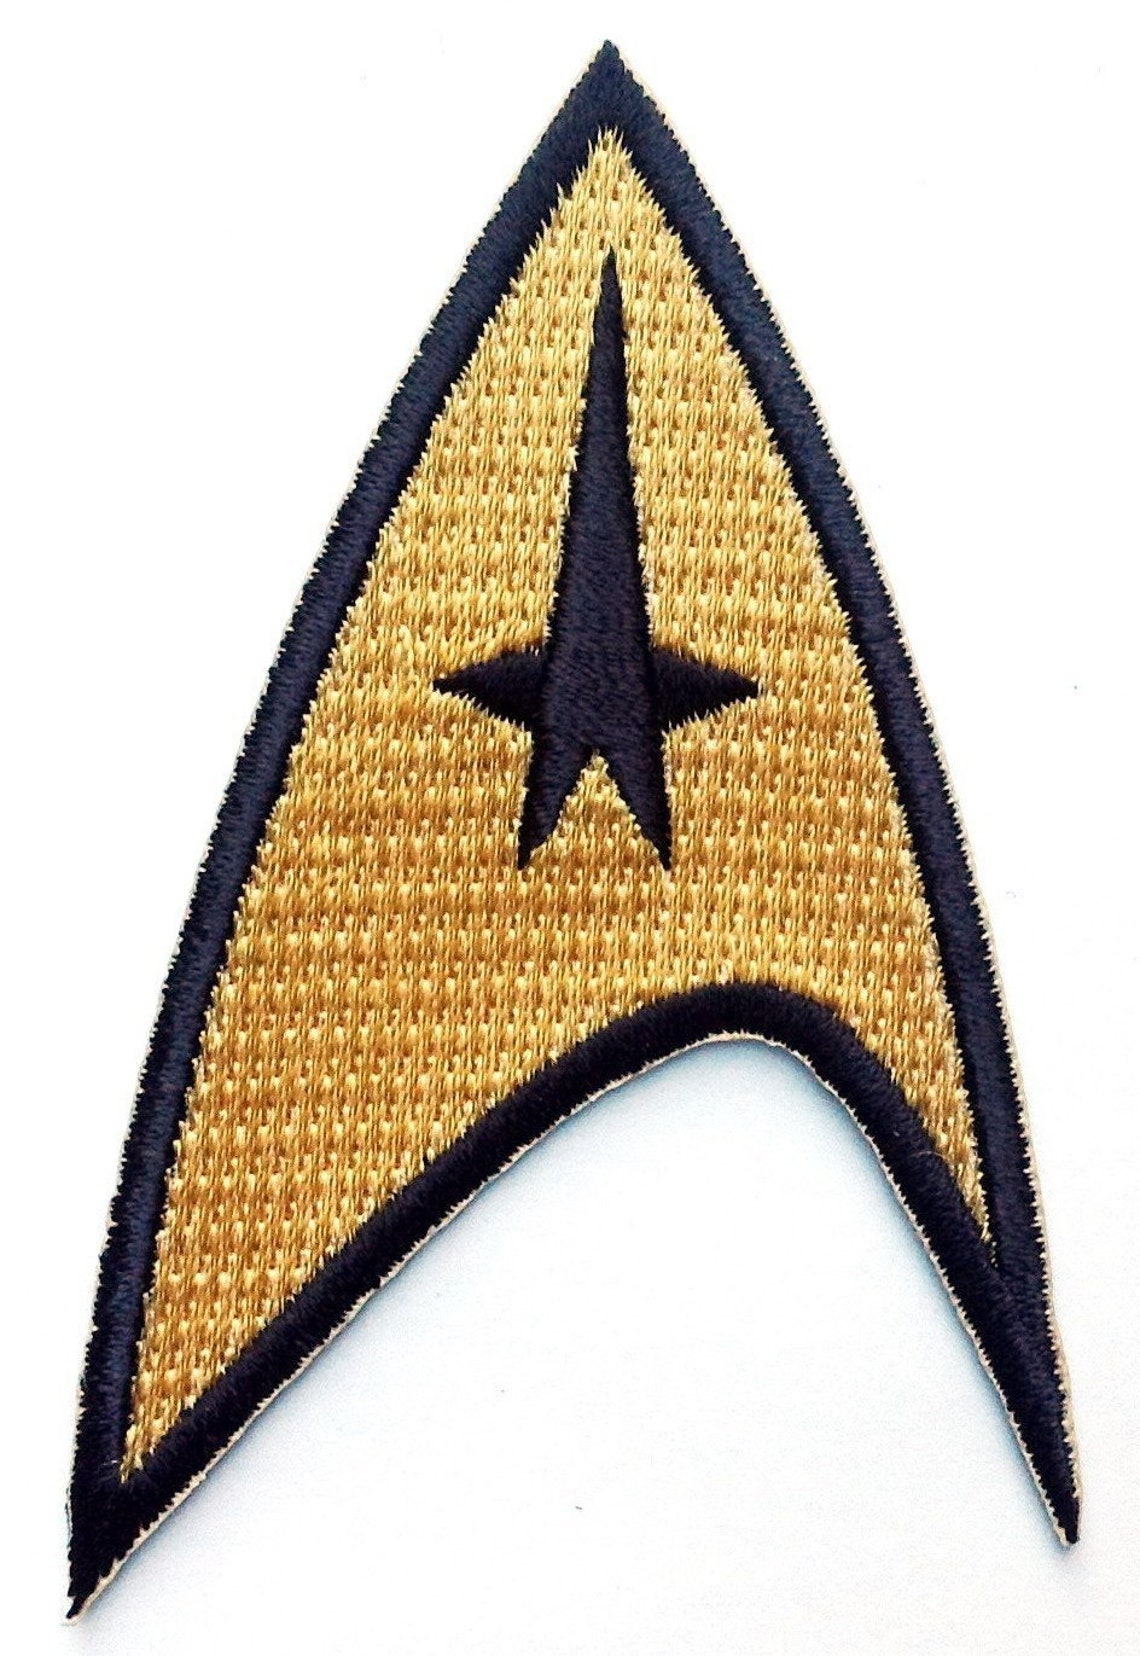 star trek officer insignia